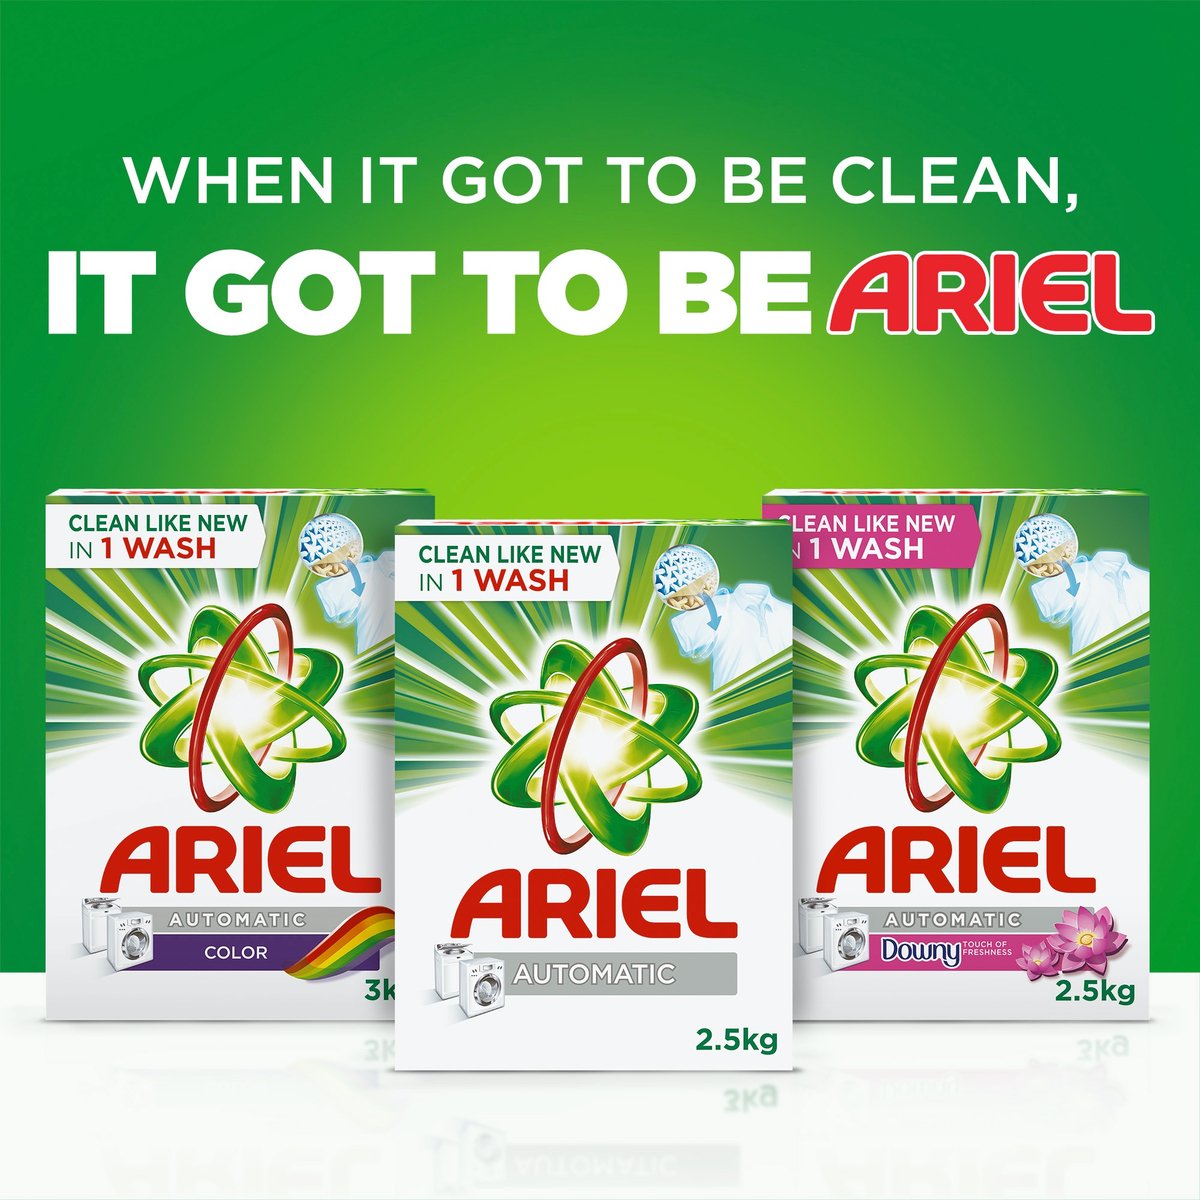 Ariel Antibacterial Laundry Detergent Automatic 2 x 2.25kg